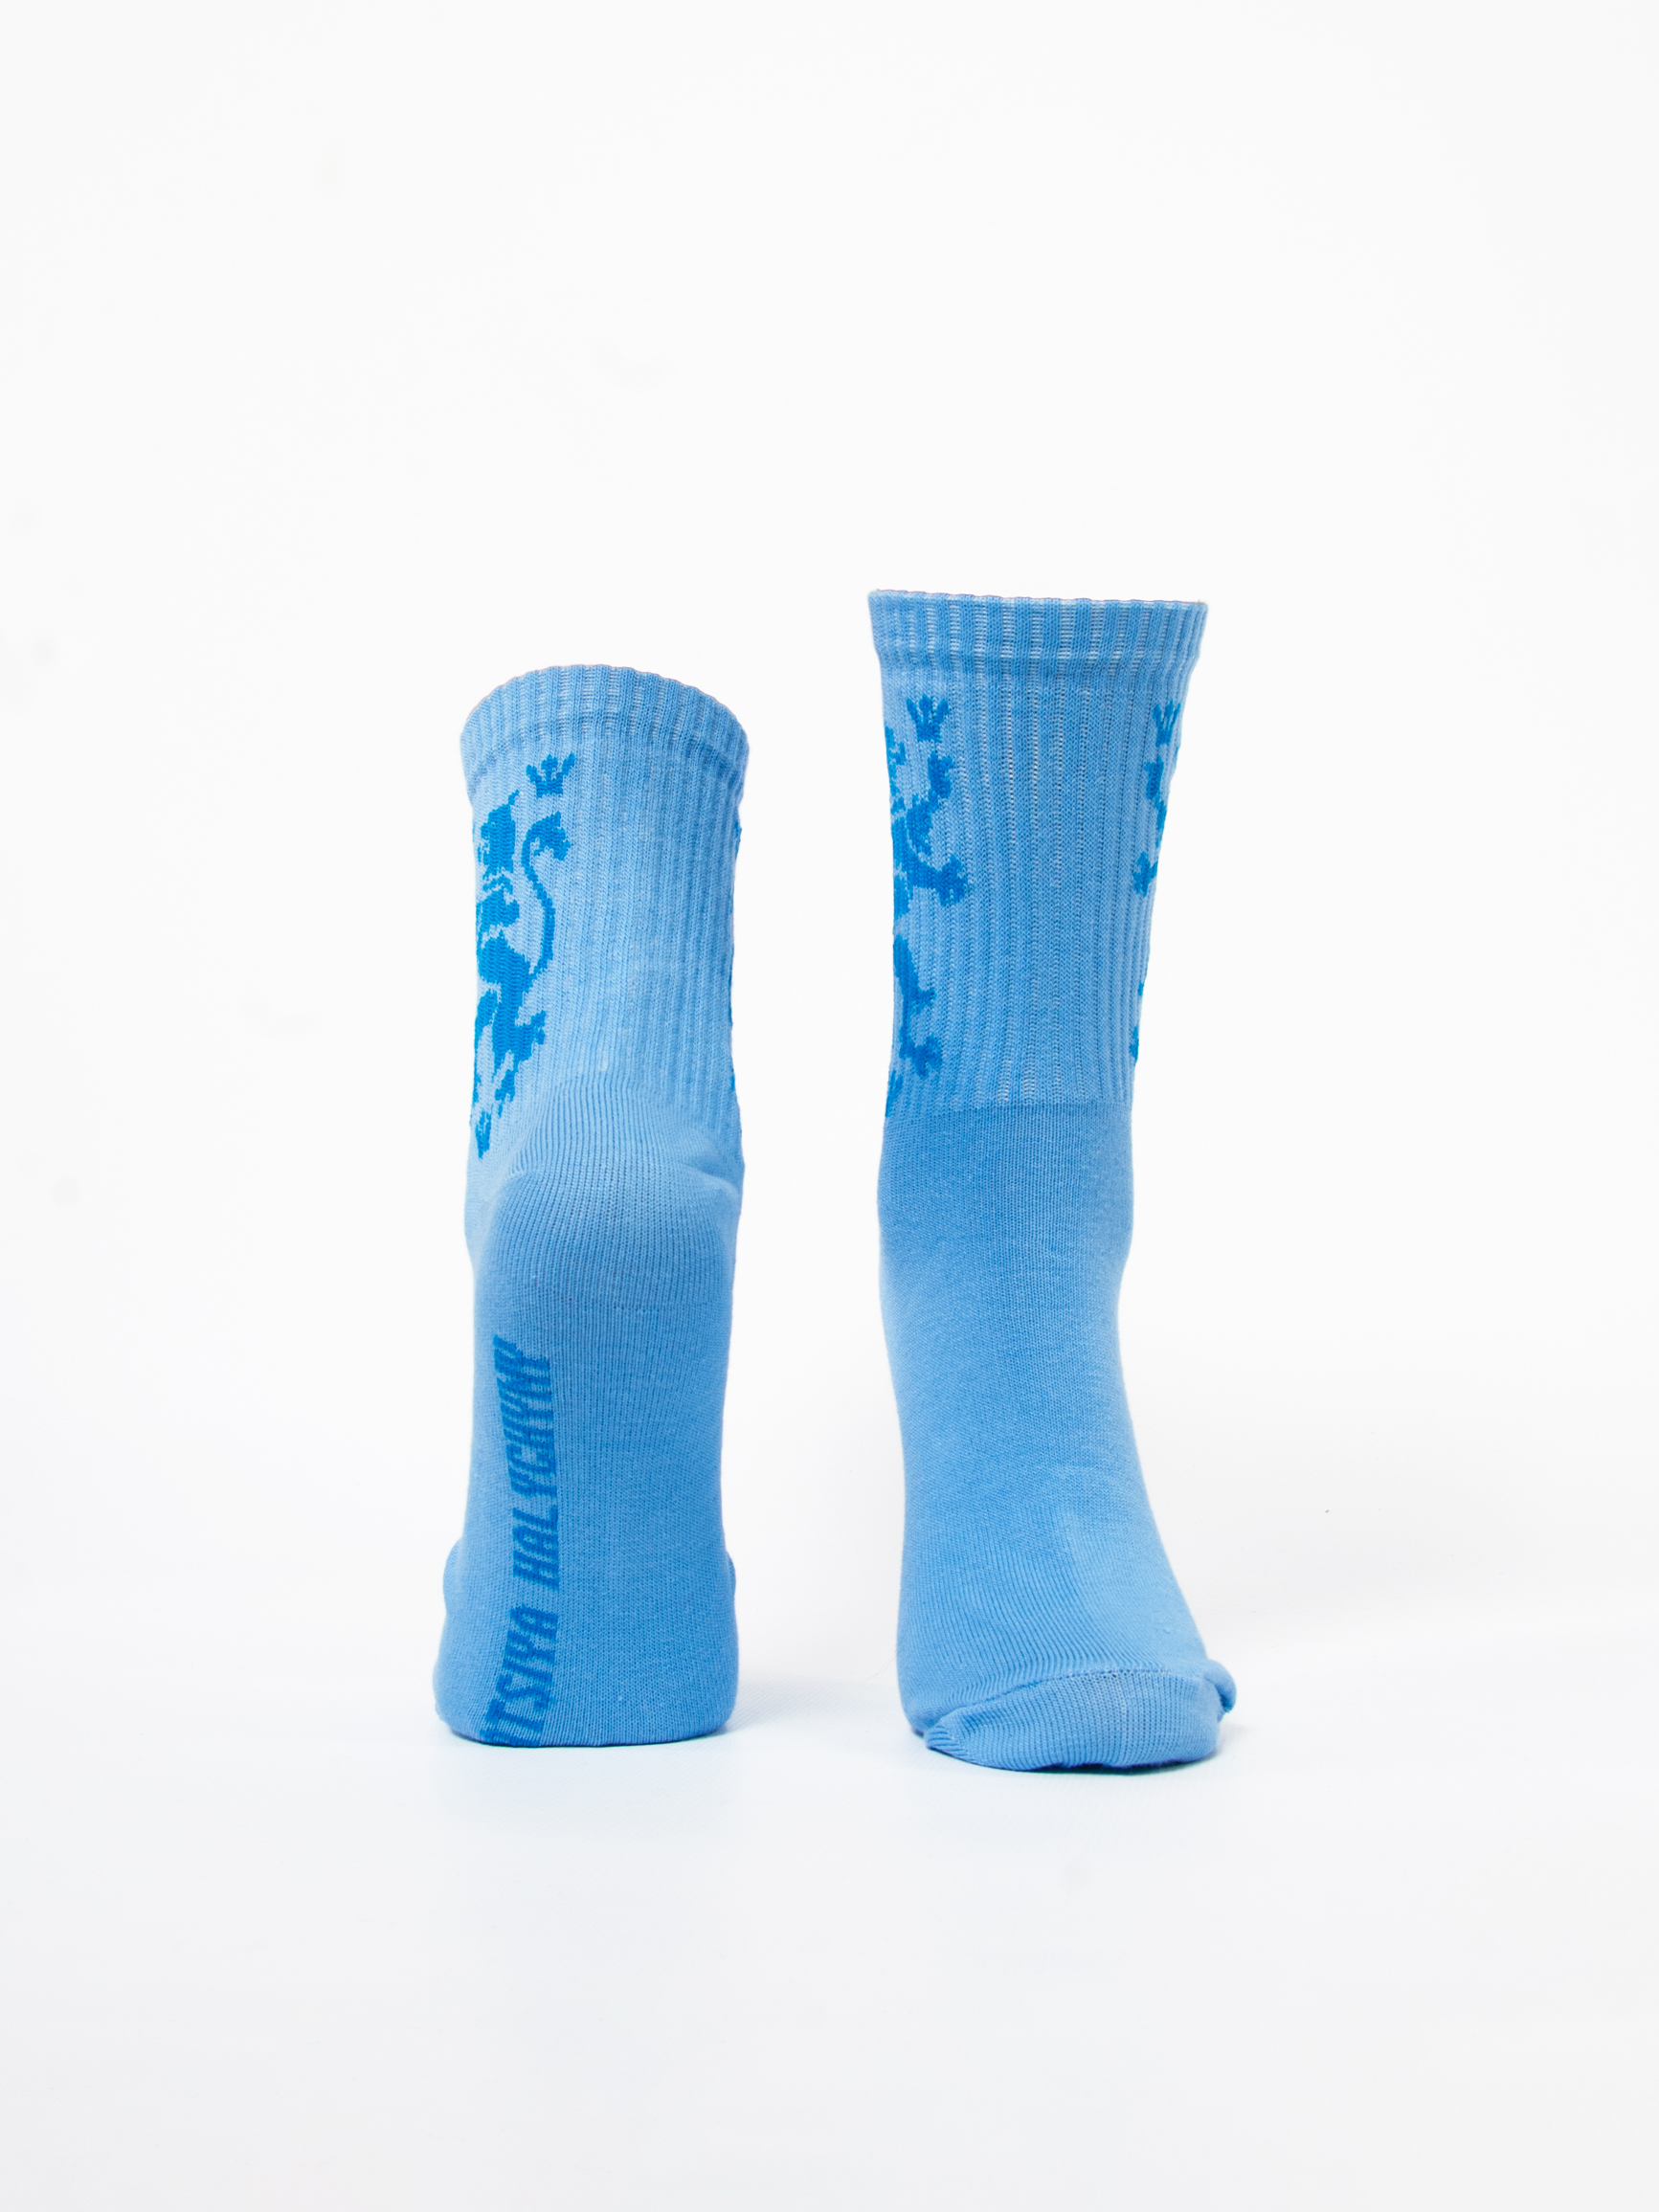 Шкарпетки Лев. Колір блакитний. 95% бавовна, 5% еластан  Товар обміну та поверненню не підлягає згідно закону.